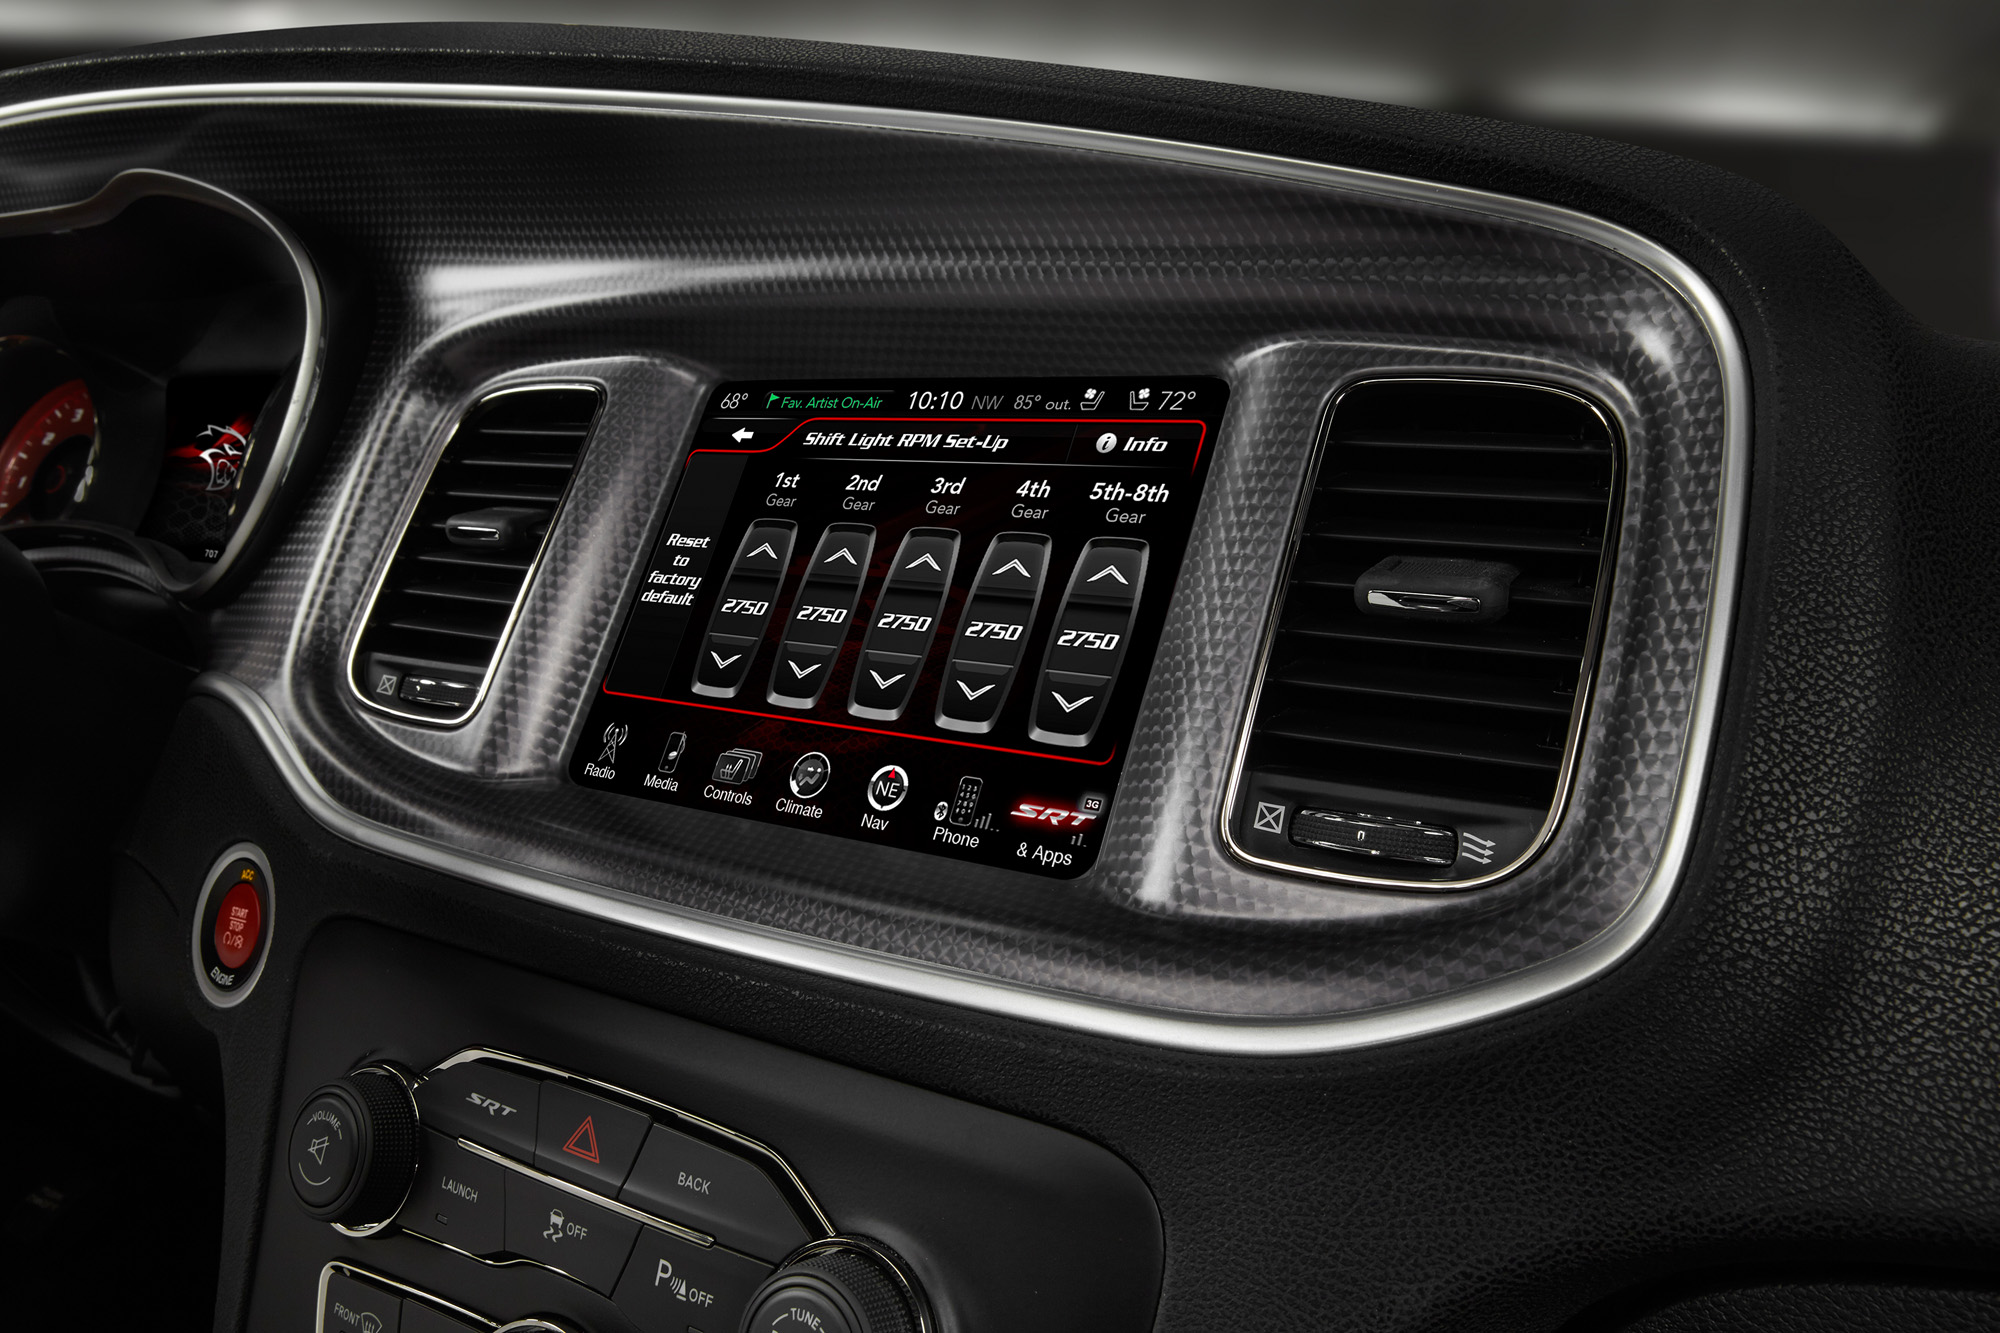 2015 Dodge Charger SRT - Shift Light Setup Toggles screen